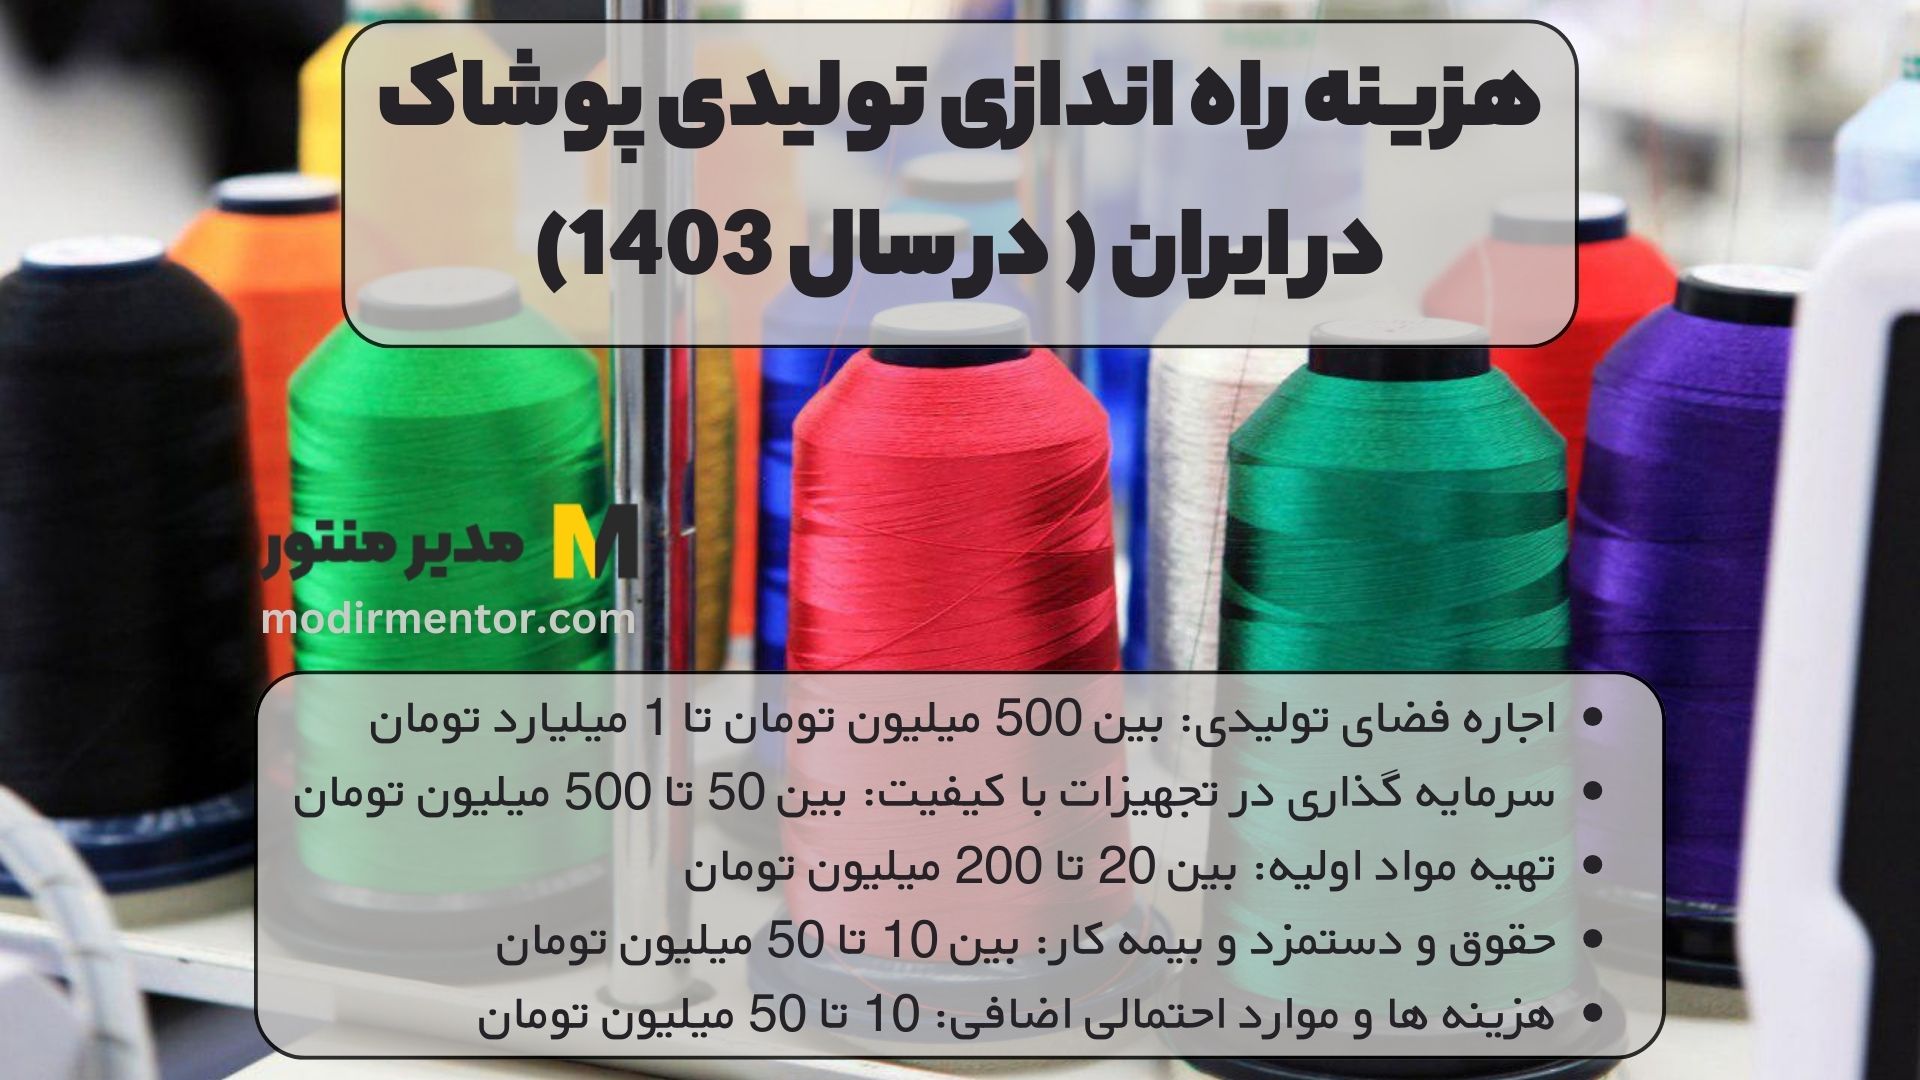 هزینه راه اندازی تولیدی پوشاک در ایران ( در سال 1403)